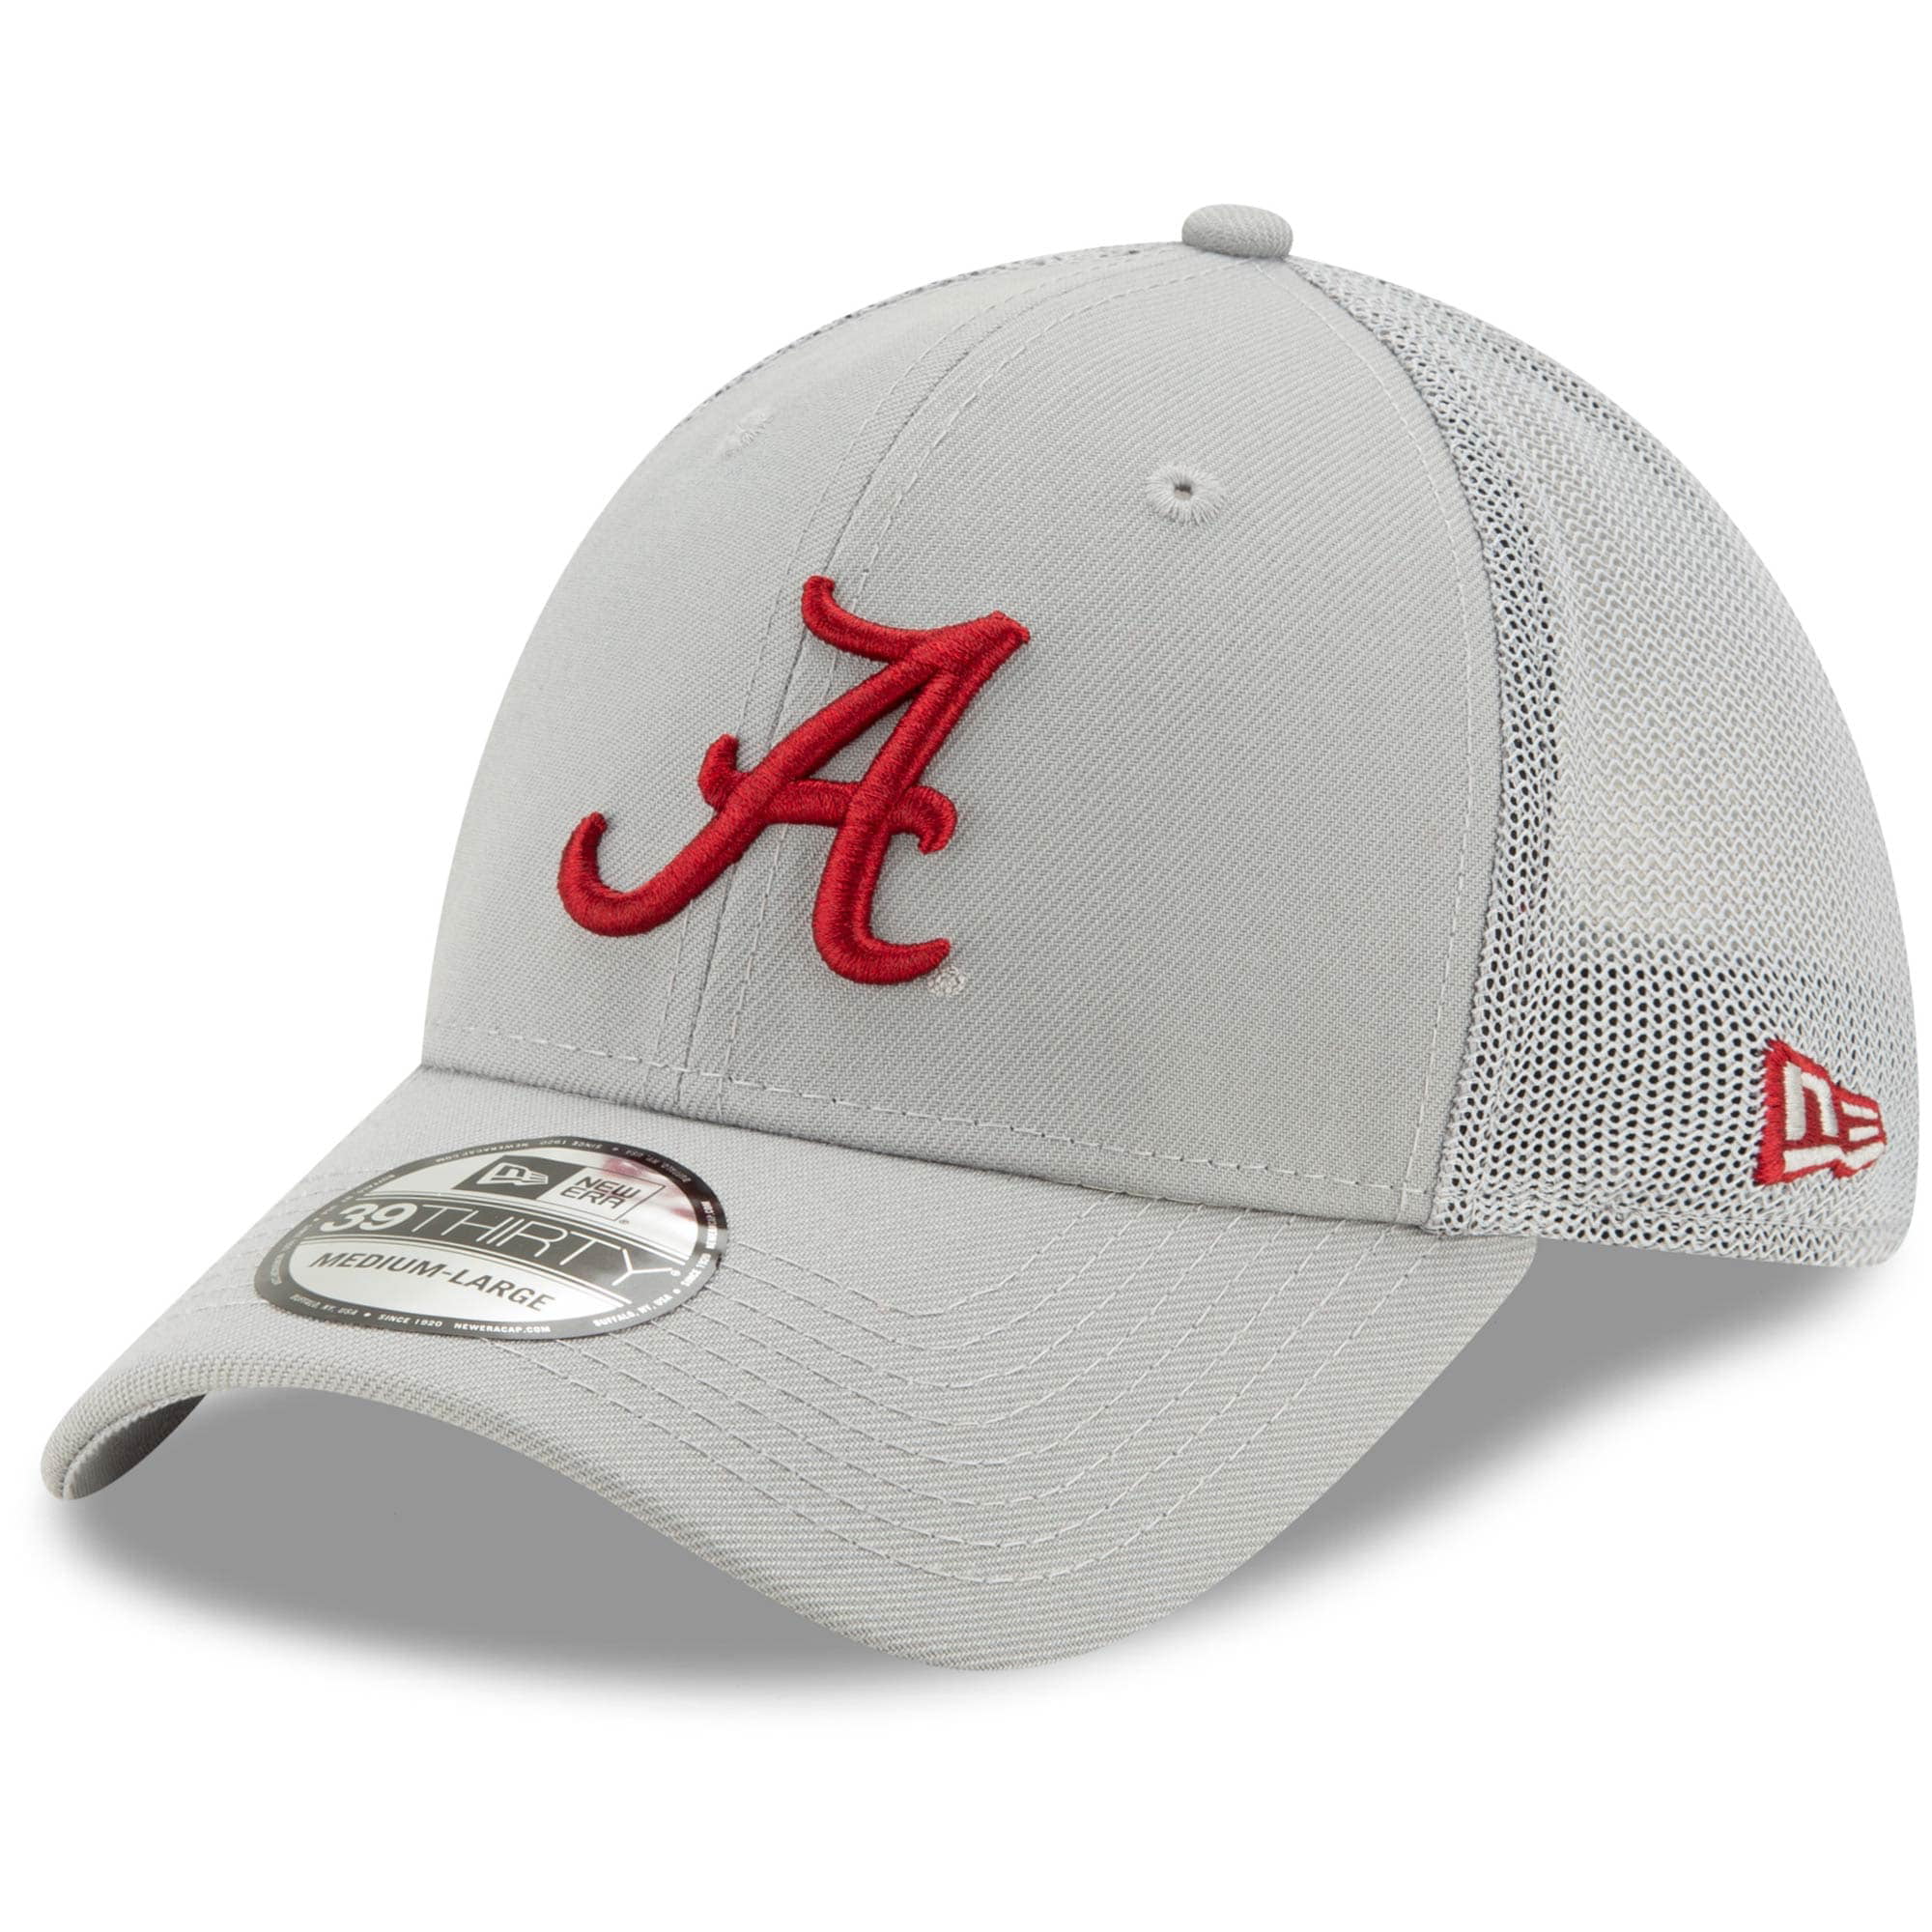 Alabama Crimson Tide Adjustable Gray Cap Mesh Back Hat